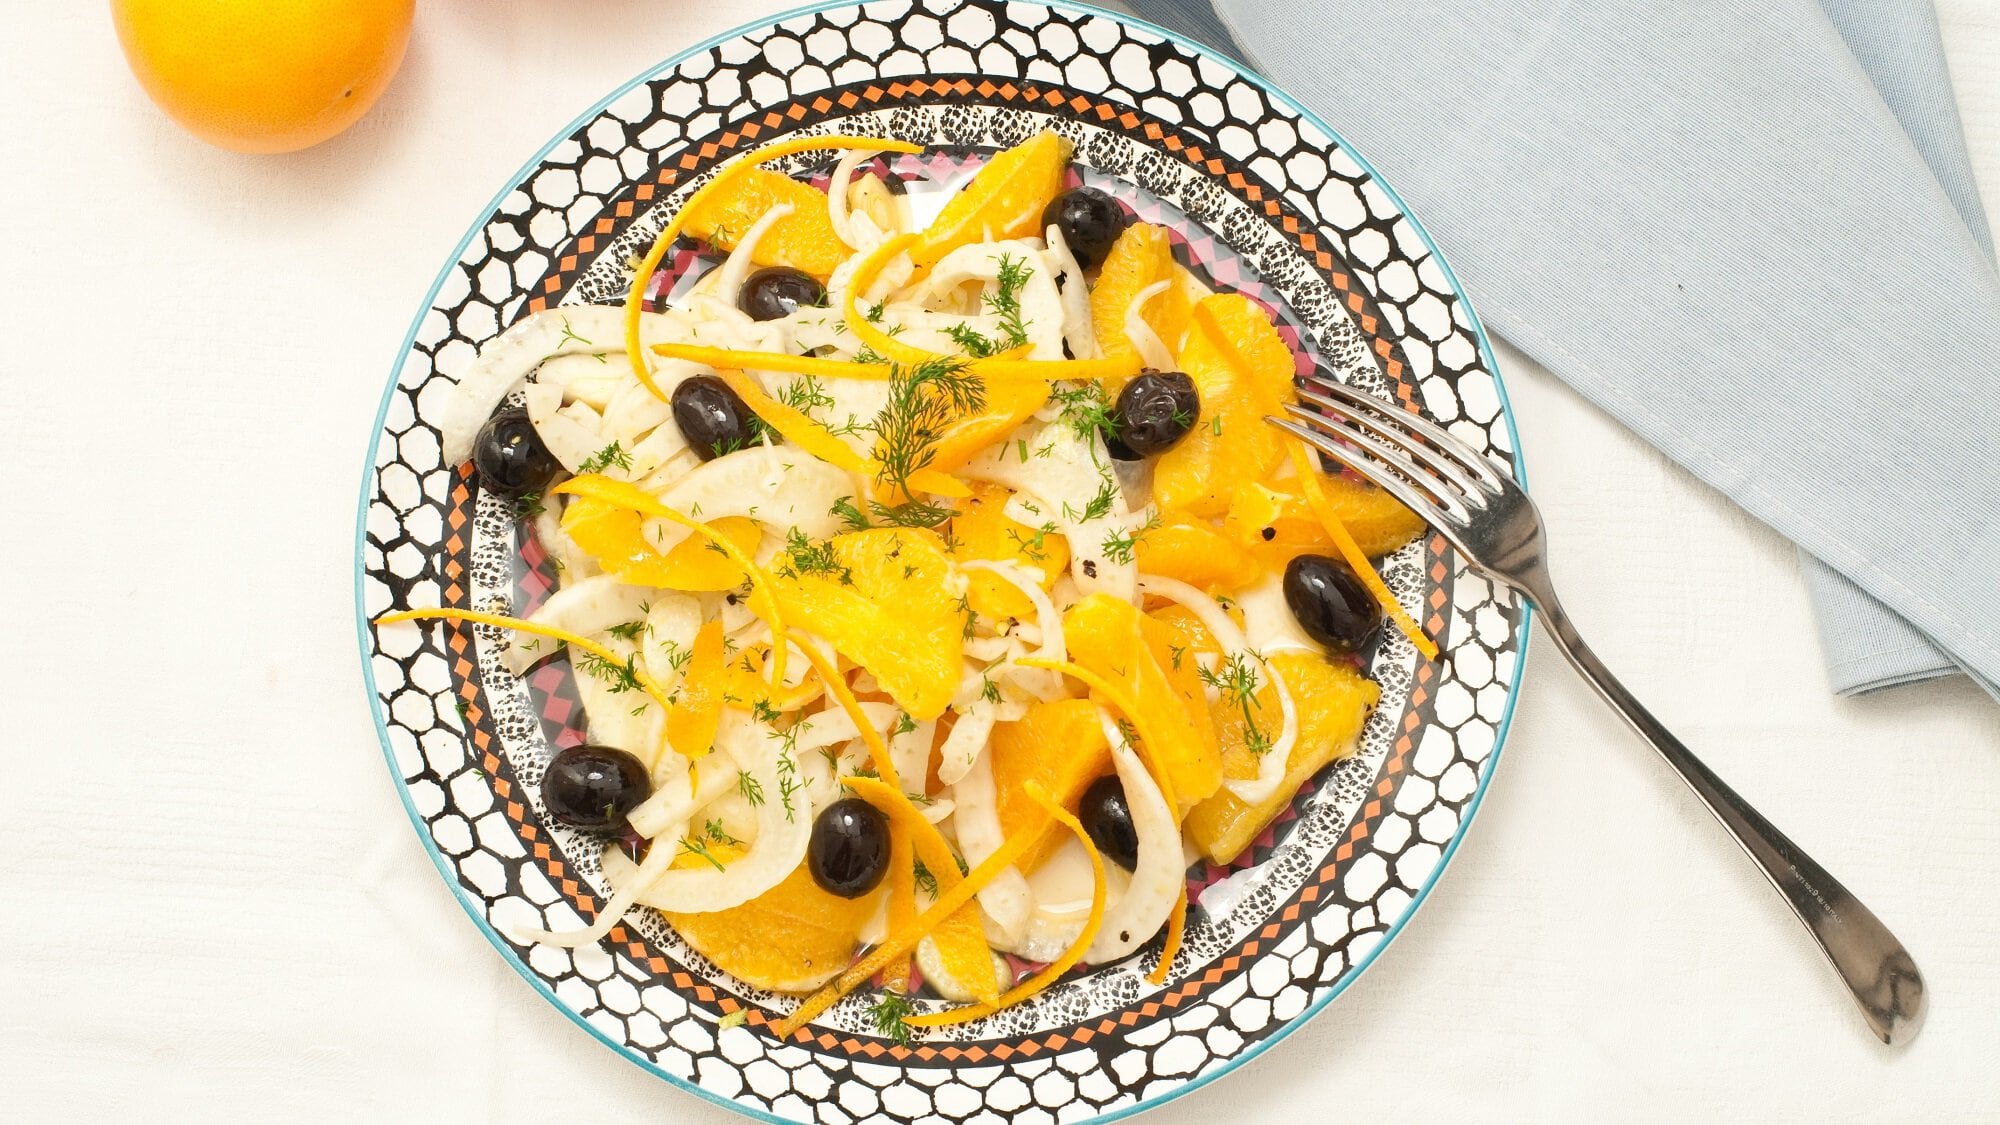 Draufsicht: ein mediterran bemalter Teller mit einem sizilianischem Fenchel-Oliven-Salat mit Mandel-Dressing steht auf einem weißen Untergrund. Daneben liegen eine Gabel und ein hellblaues Tuch.